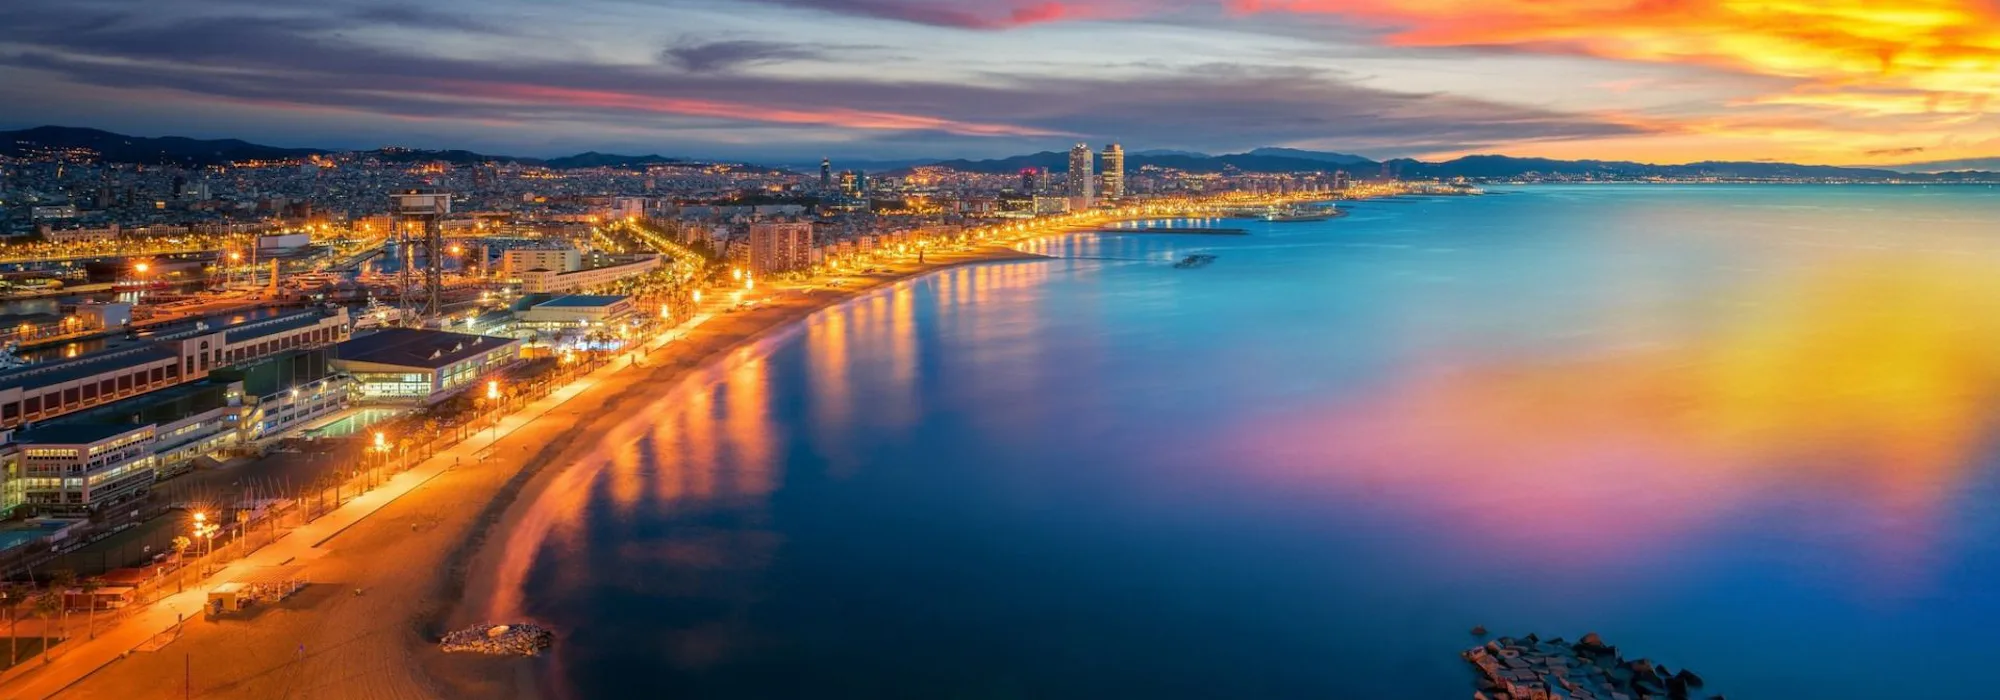 Cruisevakantie Middellandse Zee - Barcelona